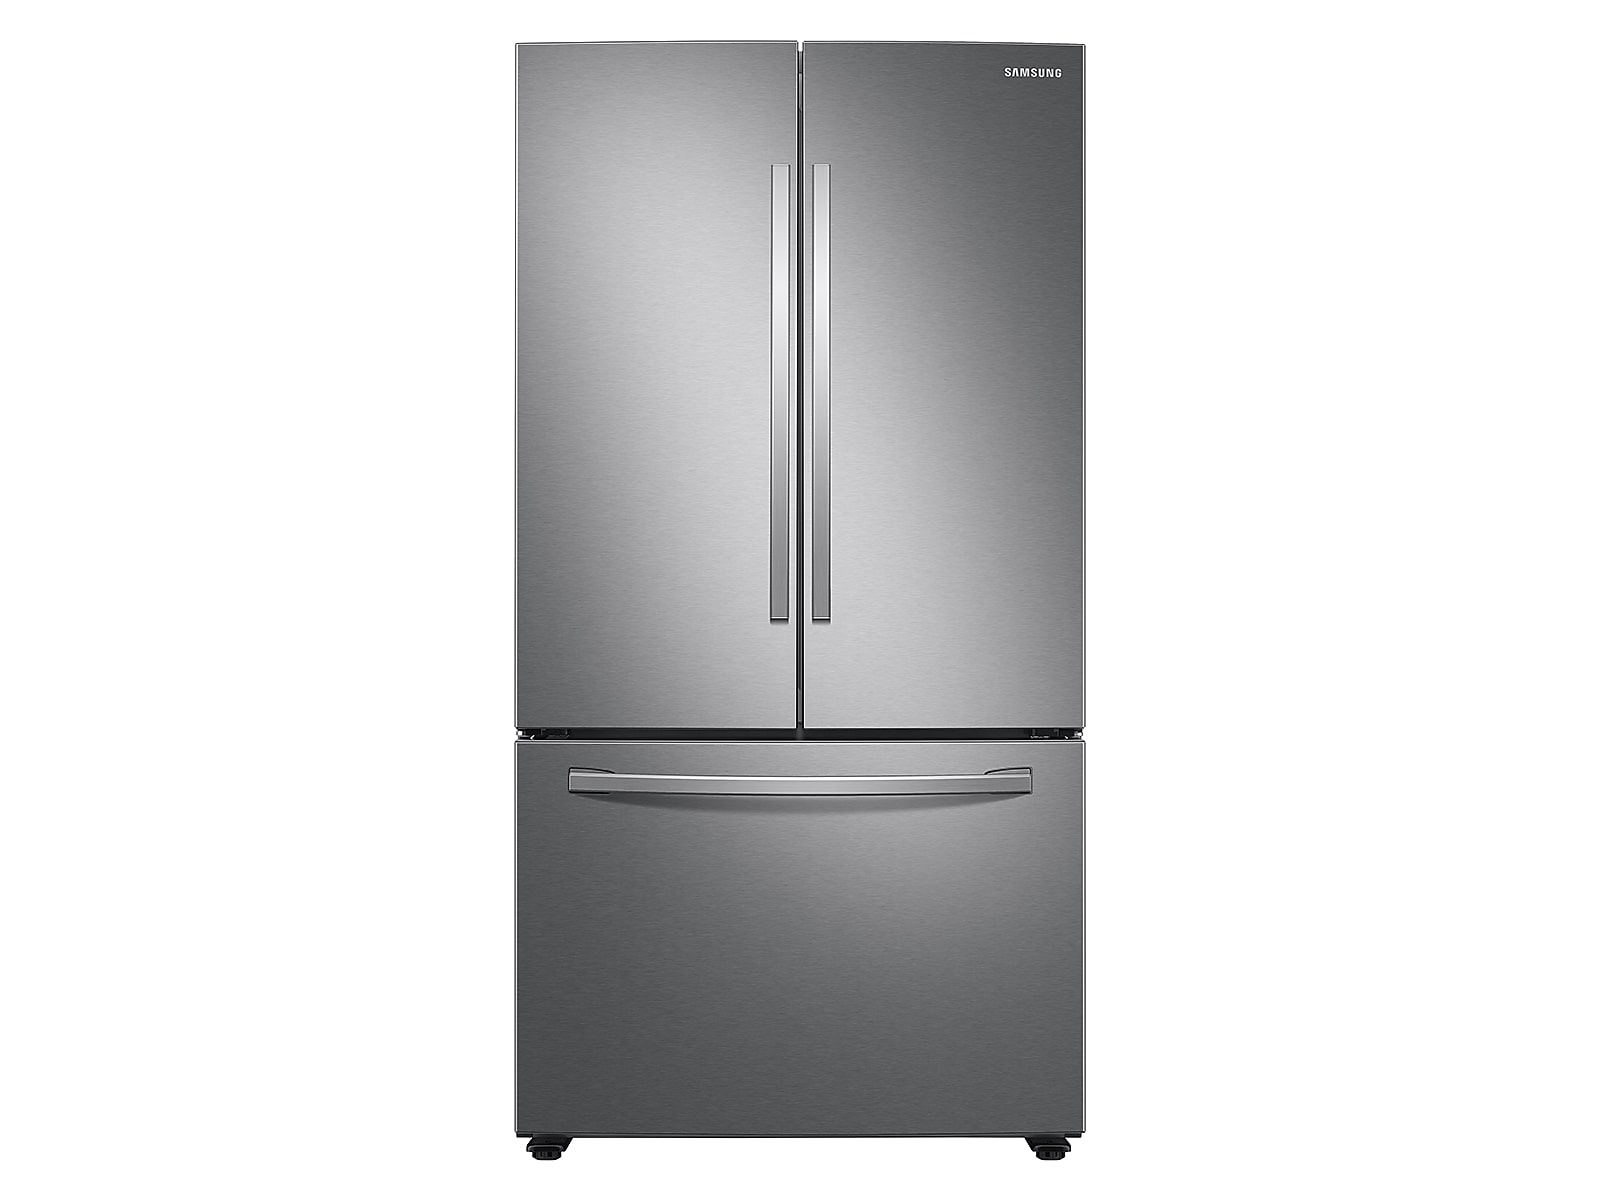 Samsung 28 cu. ft. Large Capacity 3-Door French Door Refrigerator in Silver(RF28T5001SR/AA)